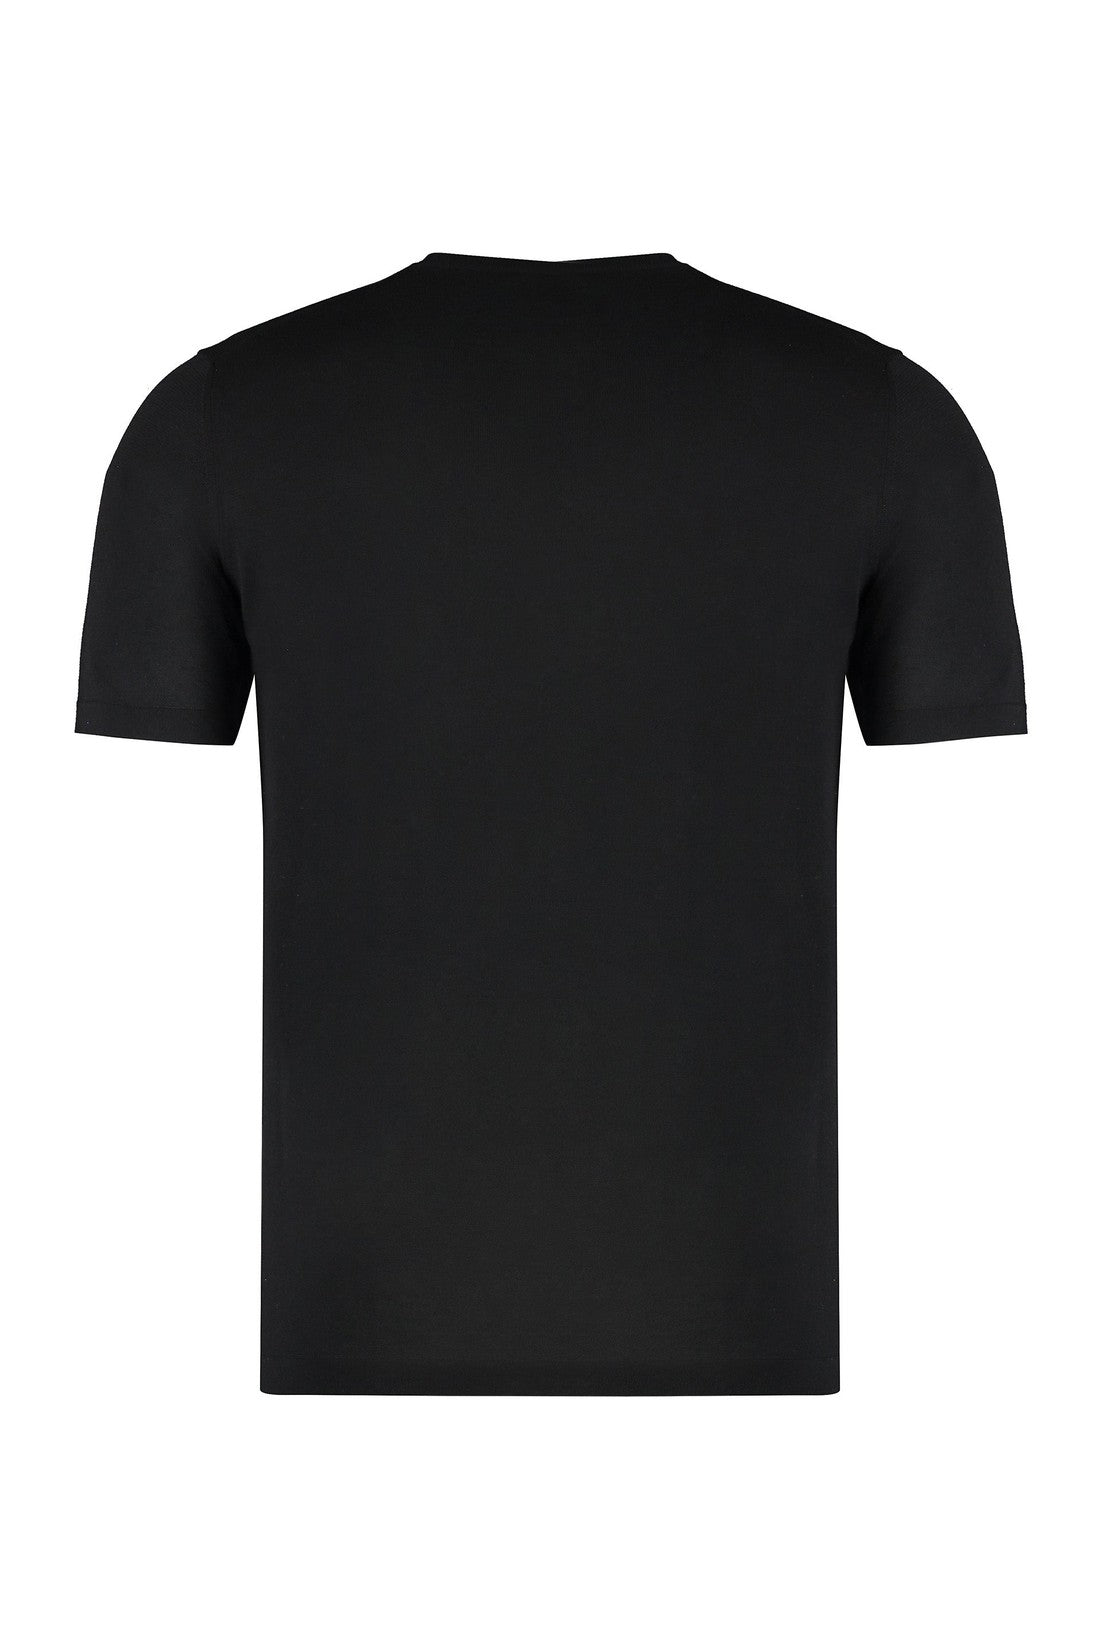 Roberto Collina-OUTLET-SALE-Cotton crew-neck T-shirt-ARCHIVIST